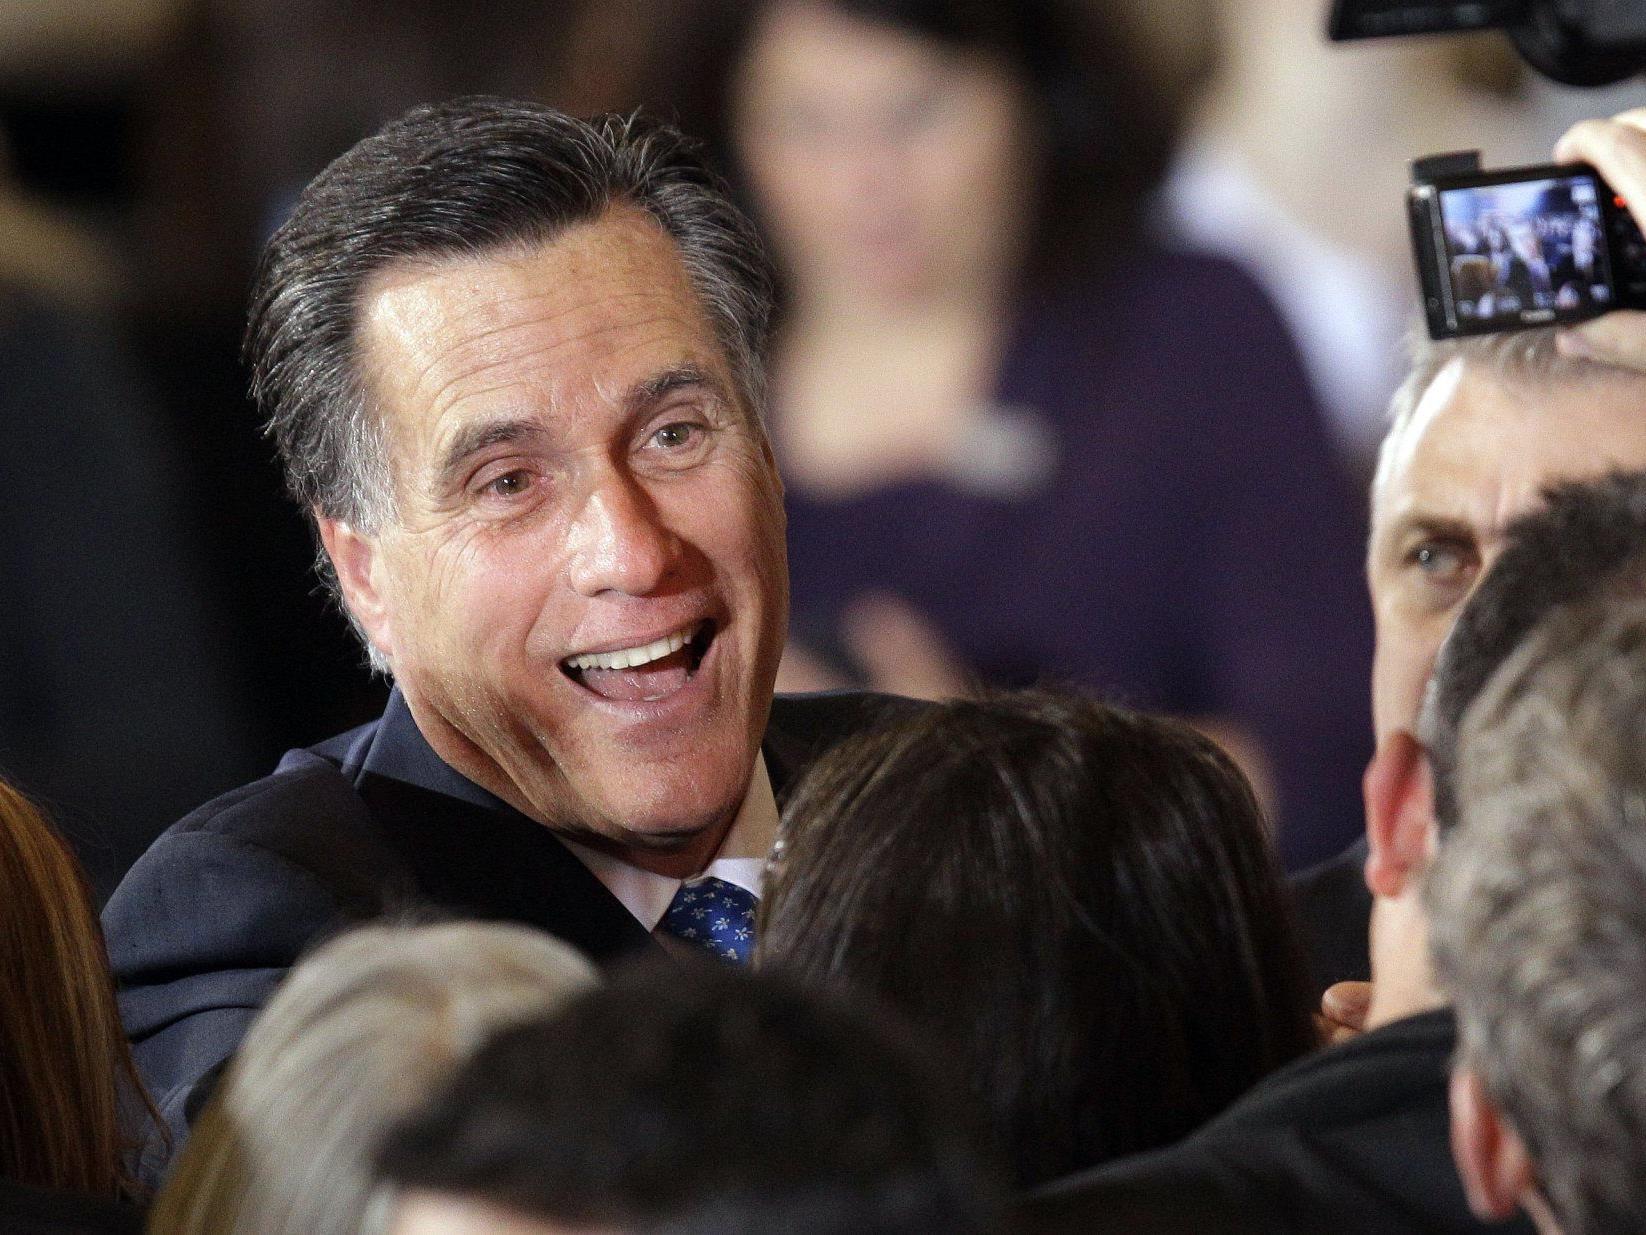 Romney gilt als großer Favorit der Republikaner